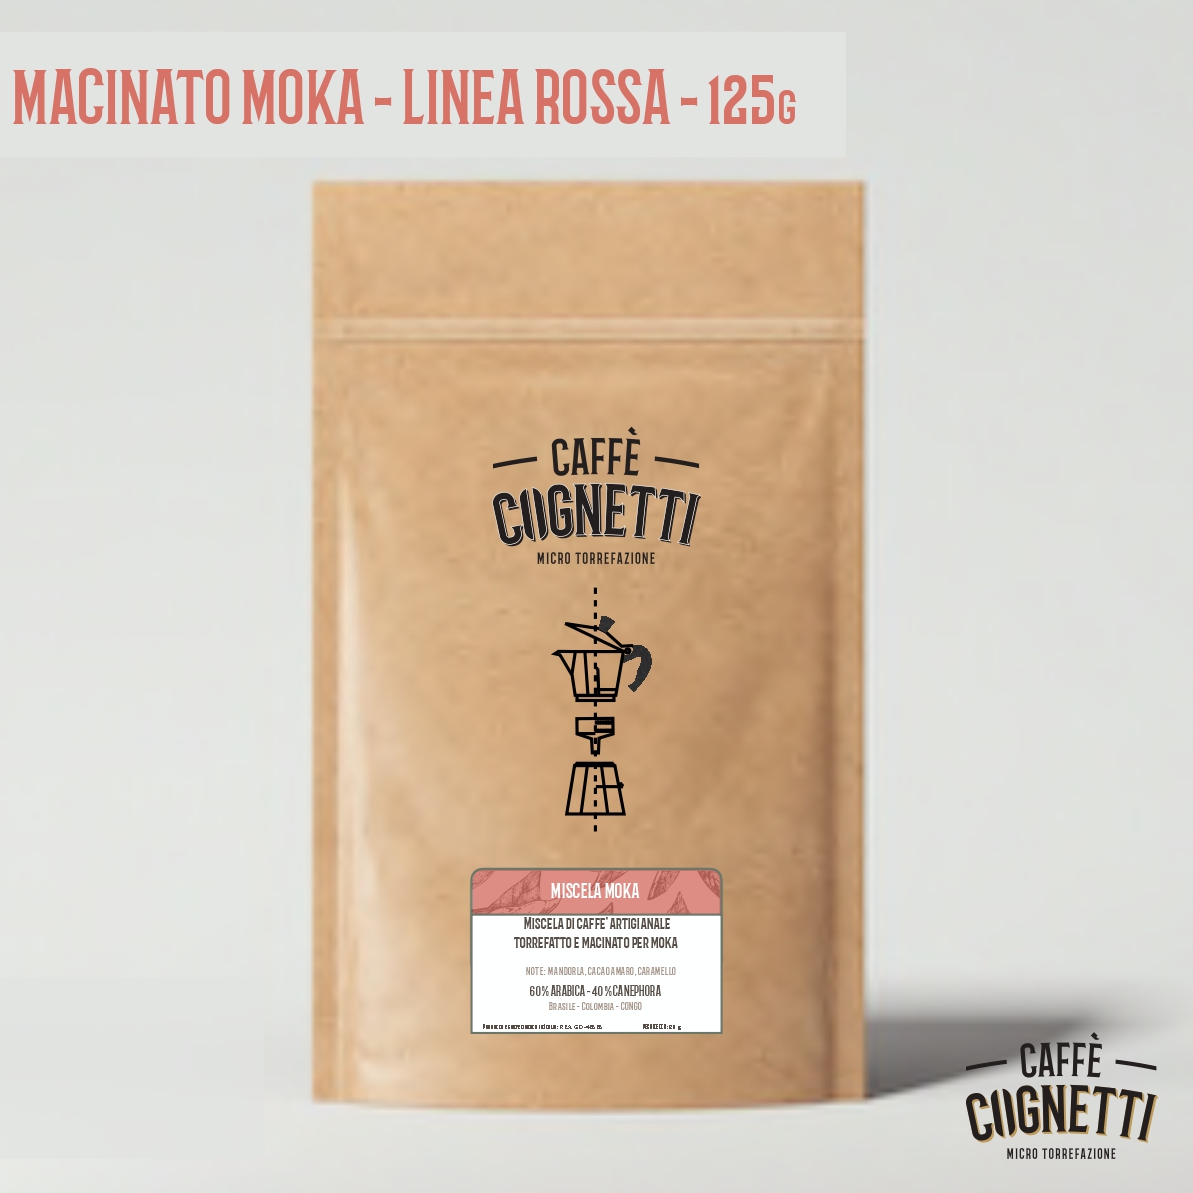 Miscela Moka 60/40 - Linea Rossa - Caffè macinato per moka 125g - Caffè  Cognetti